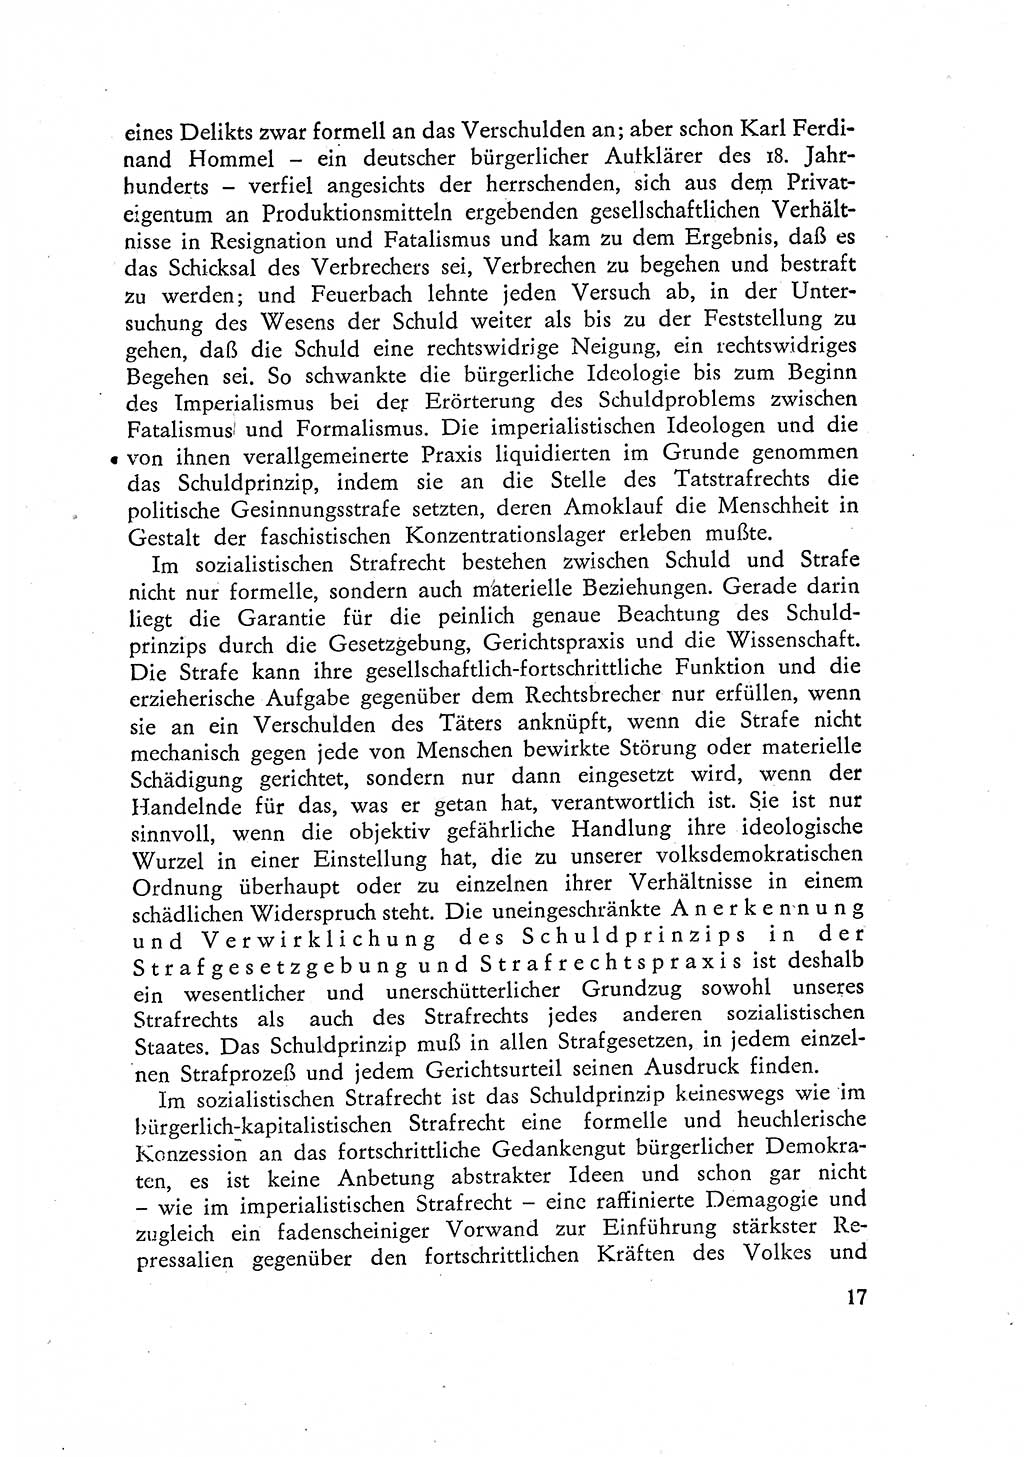 Beiträge zum Strafrecht [Deutsche Demokratische Republik (DDR)] 1959, Seite 17 (Beitr. Strafr. DDR 1959, S. 17)